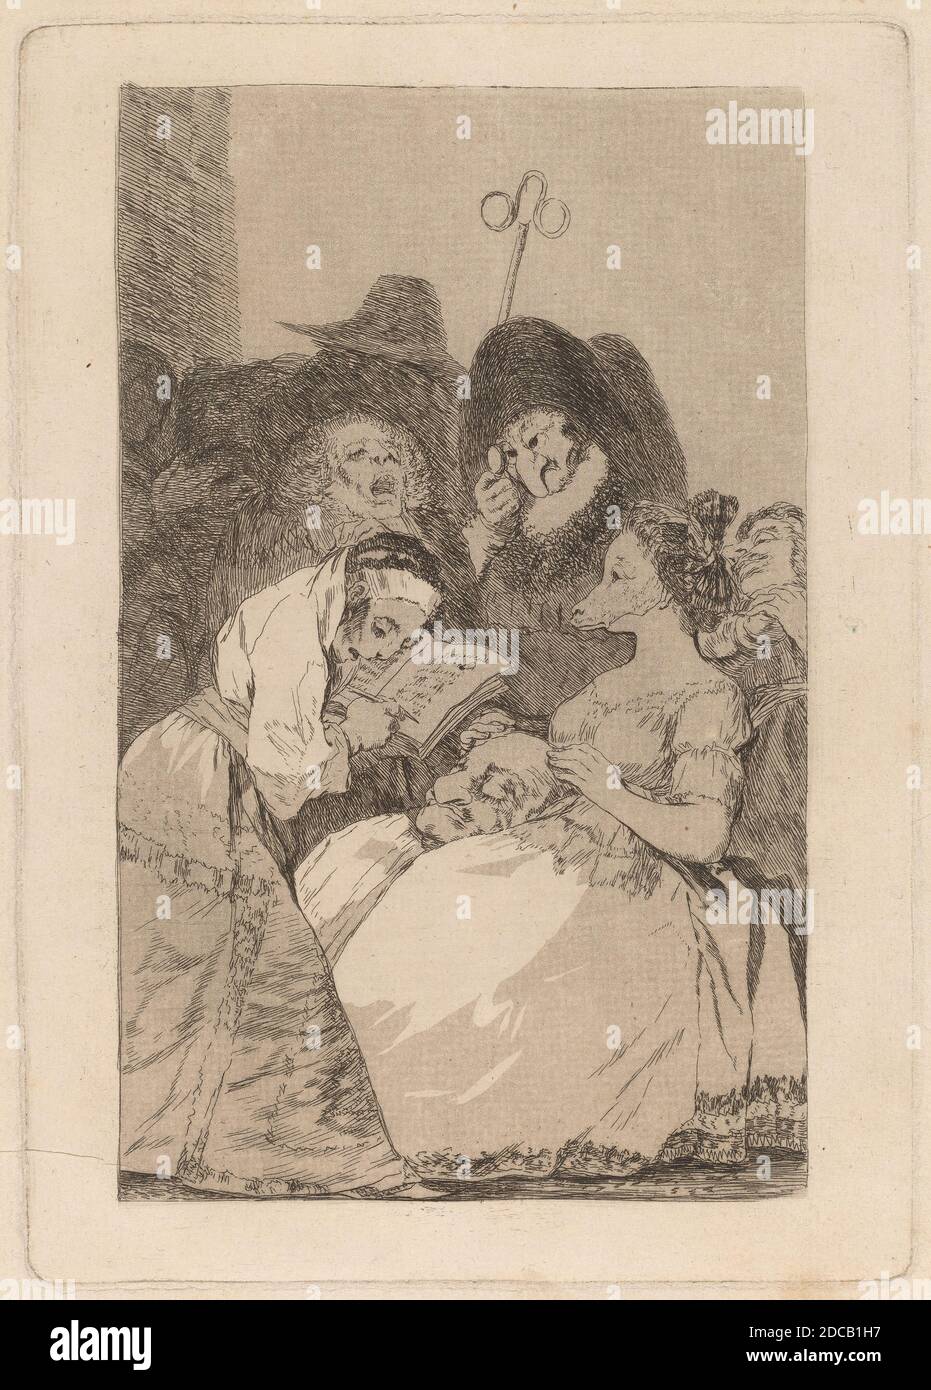 Francisco de Goya, (artista), español, 1746 - 1828, la filiación, los Caprichos (placa 57), (serie), en o antes de 1799, aguafuerte y aguafuerte, placa: 21.6 × 15.2 cm (8 1/2 × 6 pulg.), hoja: 26.4 × 20 cm (10 3/8 × 7 7/8 pulg.), hoja:   ×   cm (  × 7   pulg Foto de stock